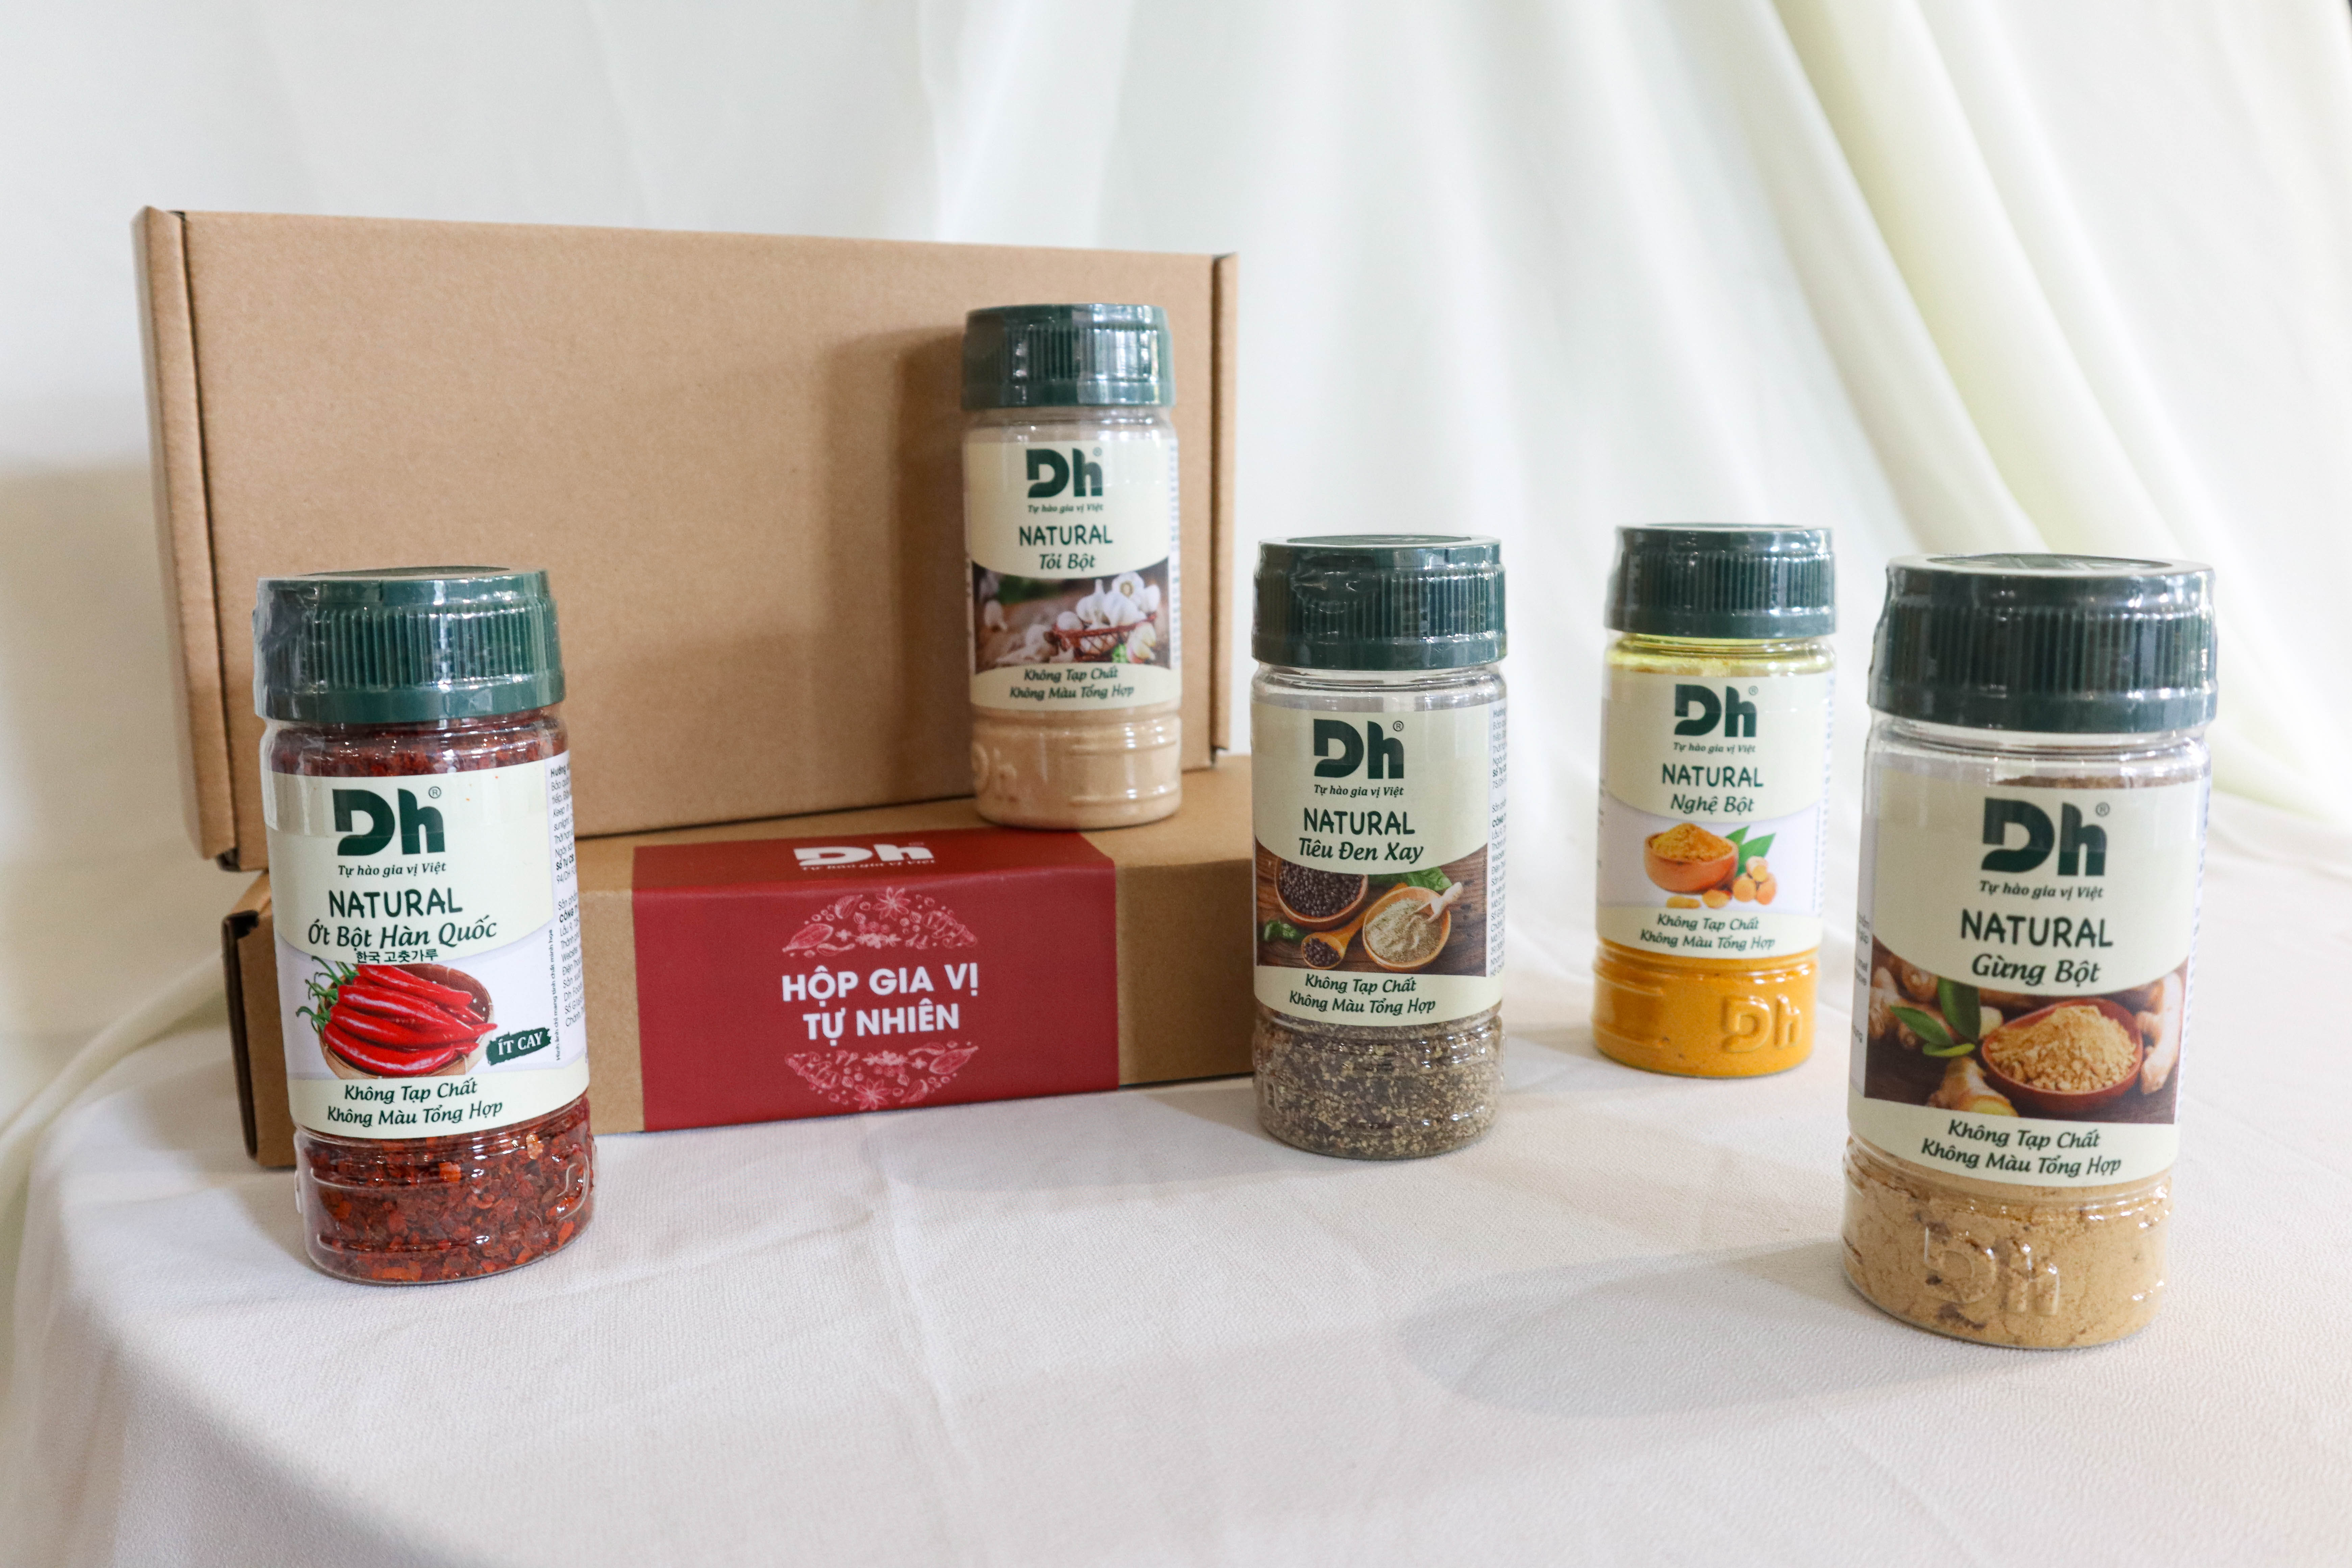 Hình ảnh Hộp Gia Vị Tự Nhiên Dh Foods - Set 5 loại nguyên liệu chế biến thực phẩm - Natural Ớt Bột Hàn Quốc, Tiêu Đen Xay, Tỏi Bột, Nghệ Bột, Gừng Bột